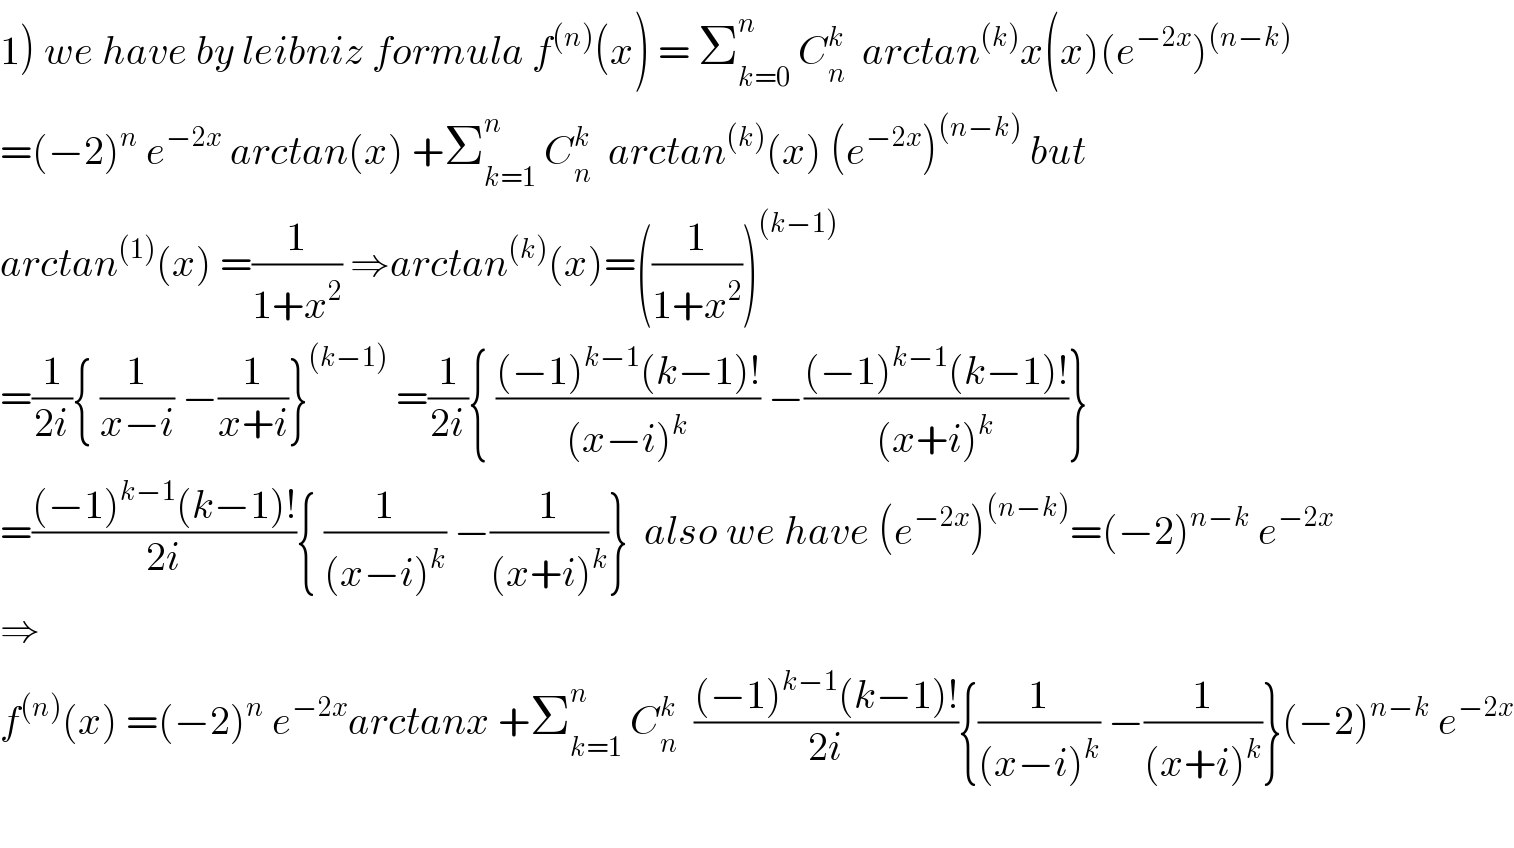 1) we have by leibniz formula f^((n)) (x) = Σ_(k=0) ^n  C_n ^k   arctan^((k)) x(x)(e^(−2x) )^((n−k))   =(−2)^n  e^(−2x)  arctan(x) +Σ_(k=1) ^n  C_n ^k   arctan^((k)) (x) (e^(−2x) )^((n−k))  but  arctan^((1)) (x) =(1/(1+x^2 )) ⇒arctan^((k)) (x)=((1/(1+x^2 )))^((k−1))   =(1/(2i)){ (1/(x−i)) −(1/(x+i))}^((k−1))  =(1/(2i)){ (((−1)^(k−1) (k−1)!)/((x−i)^k )) −(((−1)^(k−1) (k−1)!)/((x+i)^k ))}  =(((−1)^(k−1) (k−1)!)/(2i)){ (1/((x−i)^k )) −(1/((x+i)^k ))}  also we have (e^(−2x) )^((n−k)) =(−2)^(n−k)  e^(−2x)   ⇒  f^((n)) (x) =(−2)^n  e^(−2x) arctanx +Σ_(k=1) ^n  C_n ^k   (((−1)^(k−1) (k−1)!)/(2i)){(1/((x−i)^k )) −(1/((x+i)^k ))}(−2)^(n−k)  e^(−2x)     